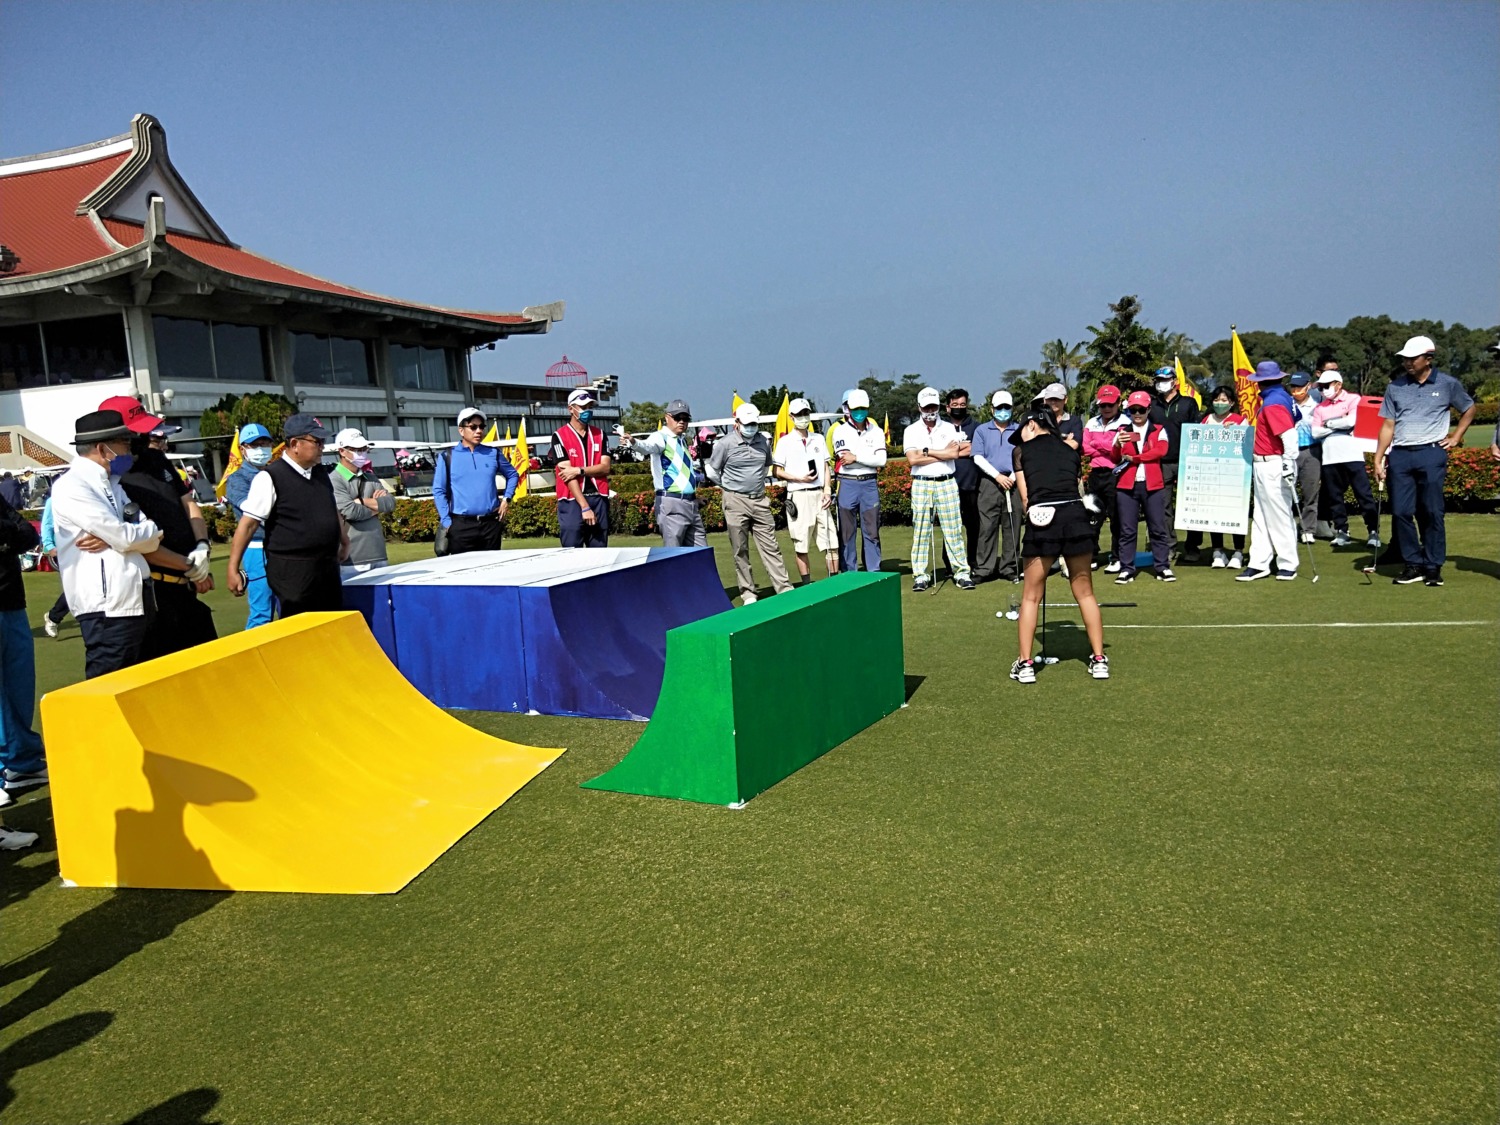 壽山盃夢想起飛公益高爾夫球賽 揮桿做公益